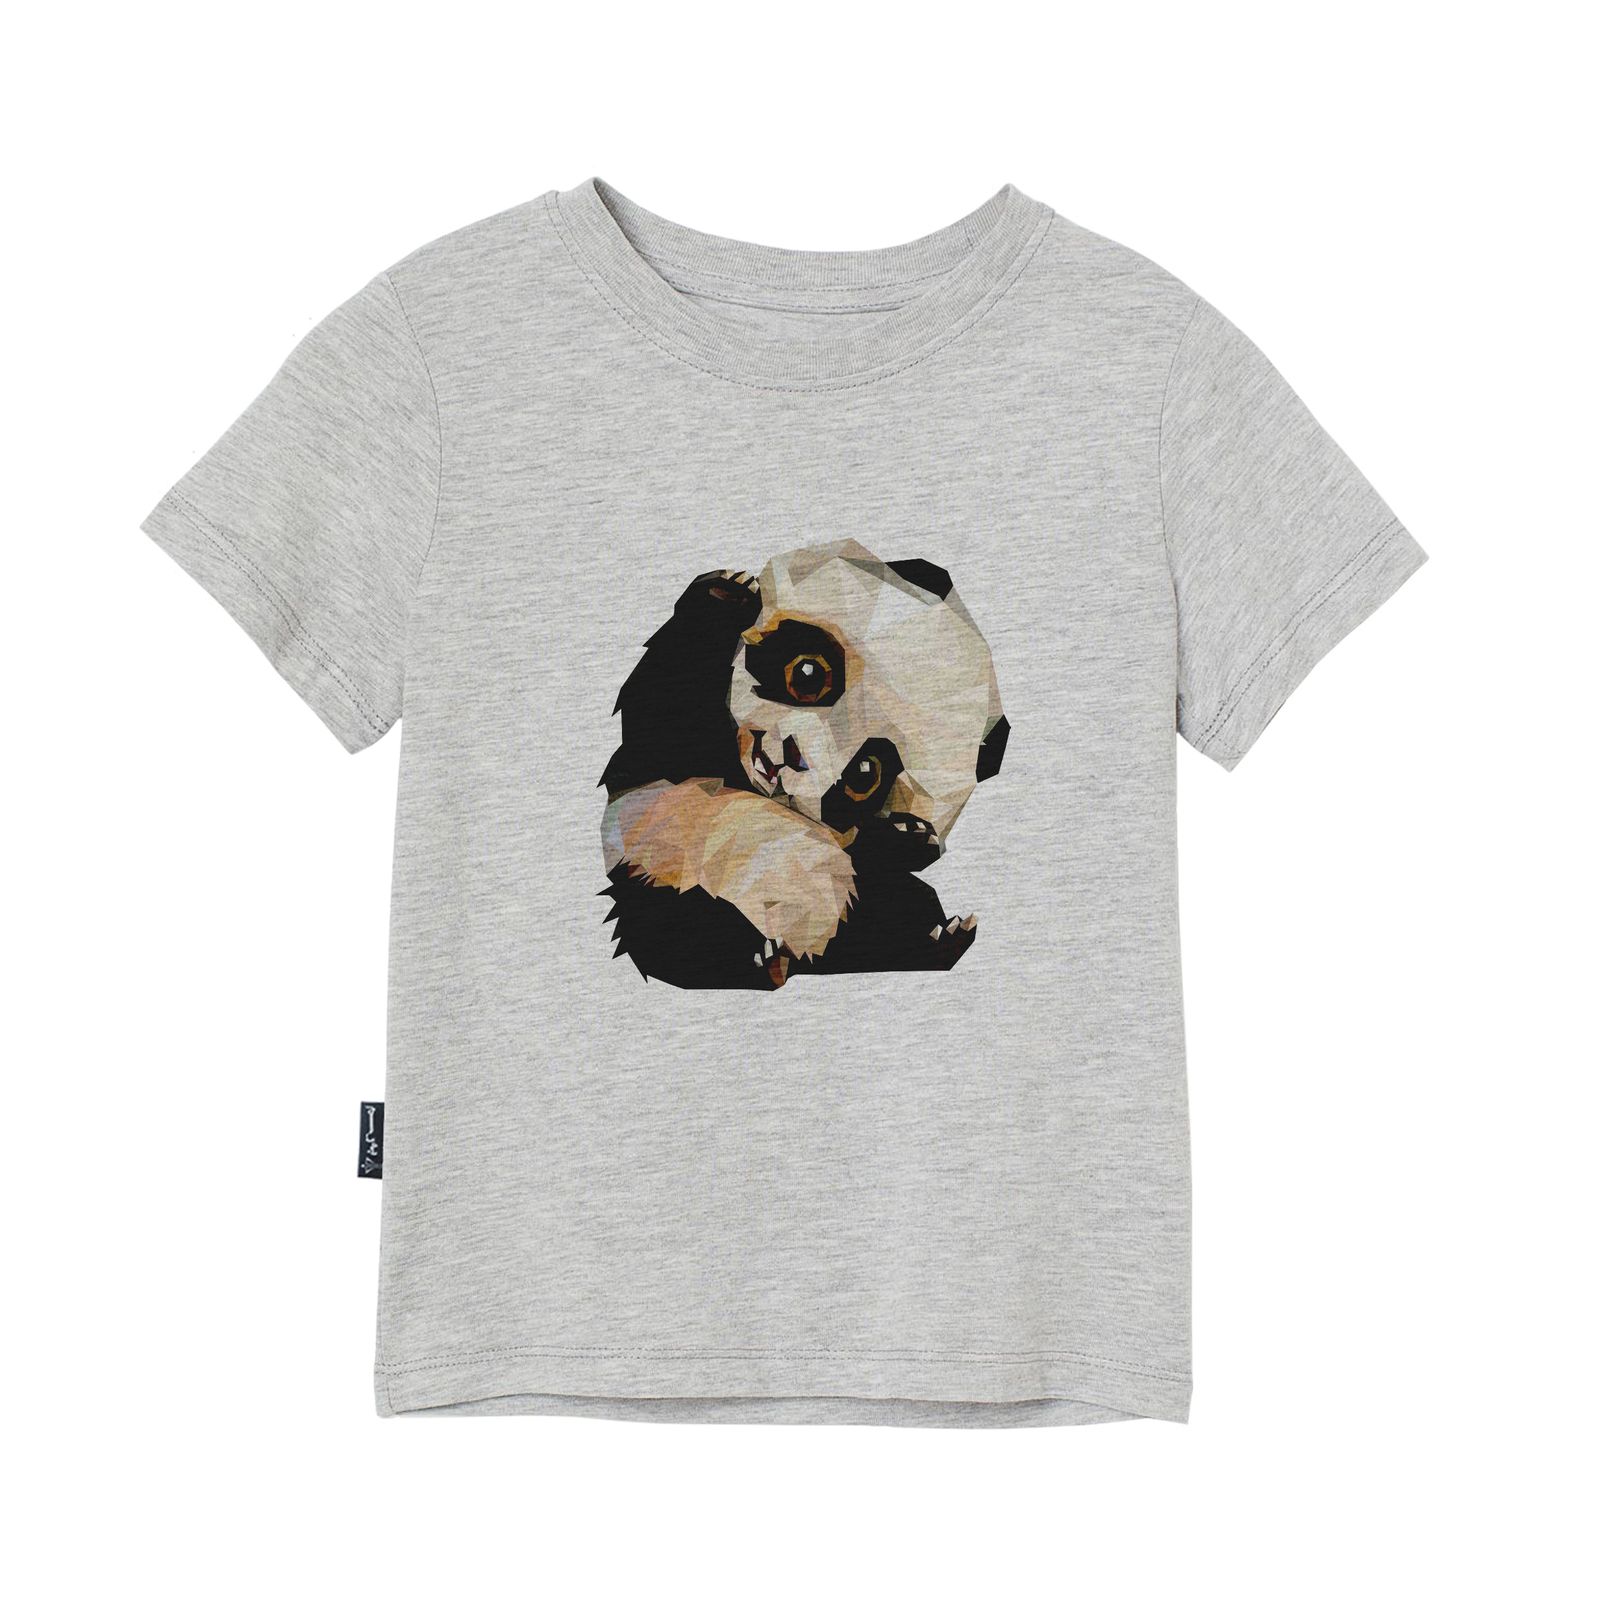 تی شرت آستین کوتاه دخترانه به رسم مدل پاندا کد 110024 -  - 1